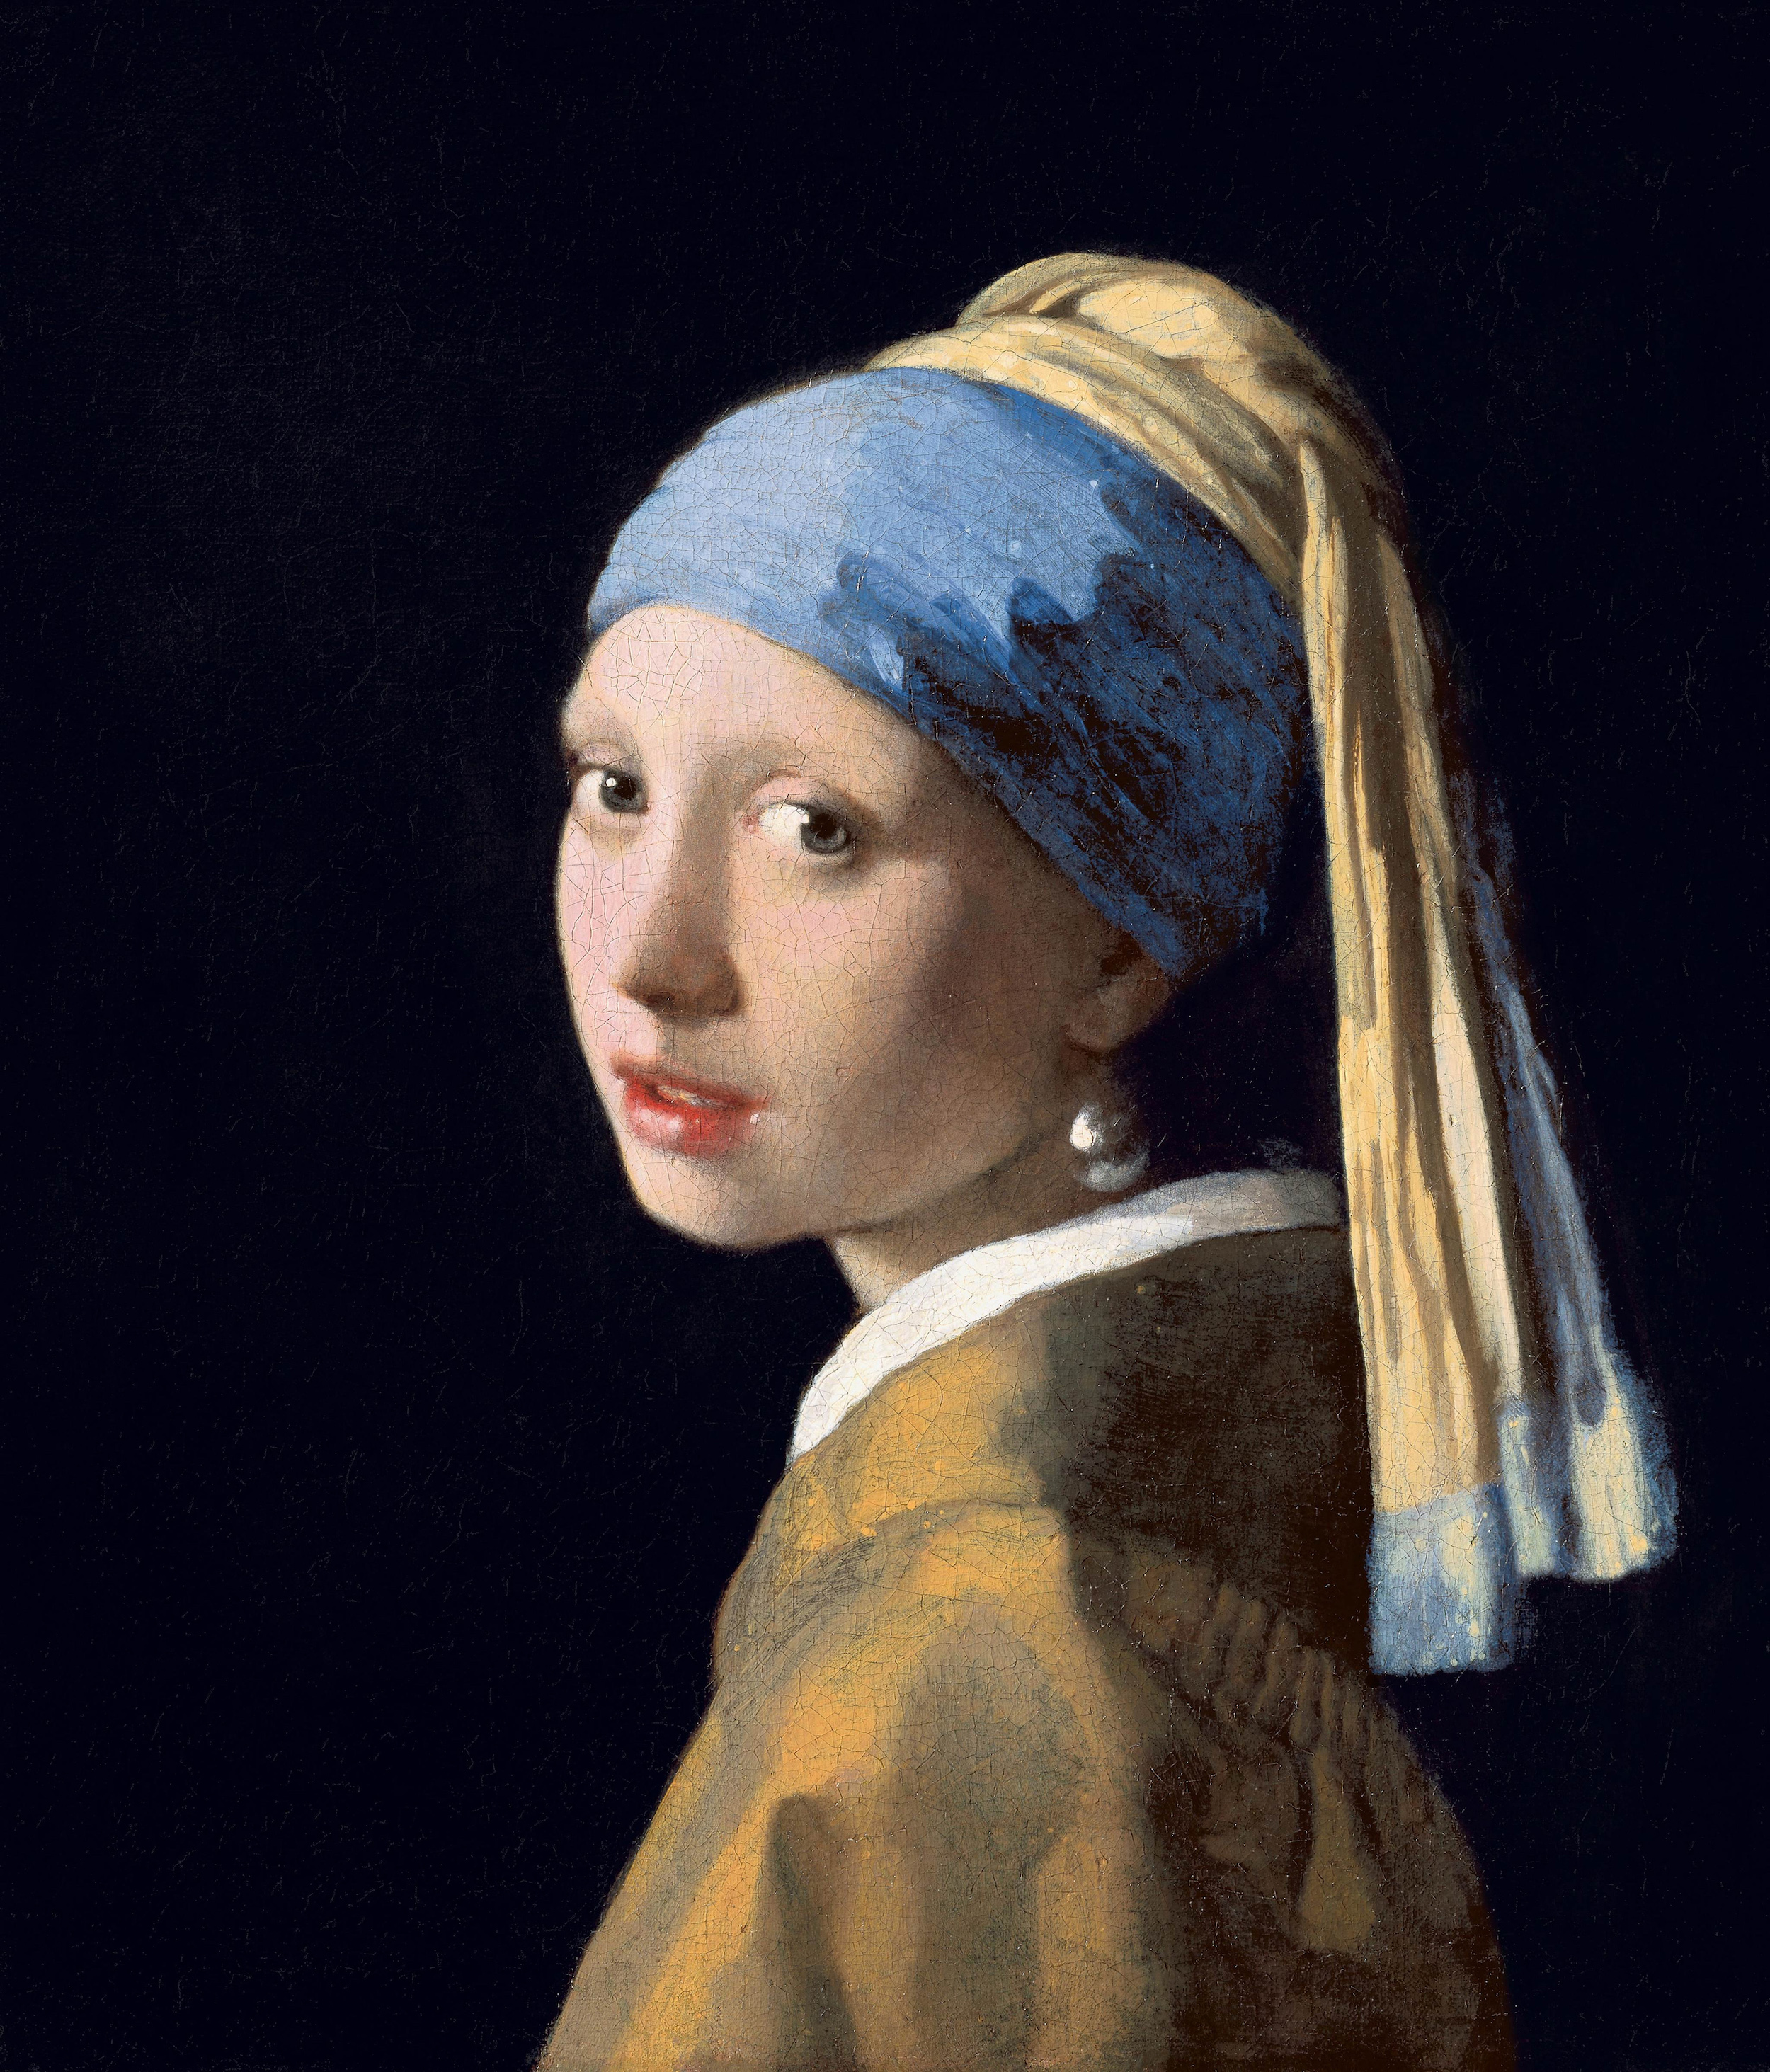 真珠の耳飾りの少女 by Johannes Vermeer - 1665年 - 44 cm x 39 cm 